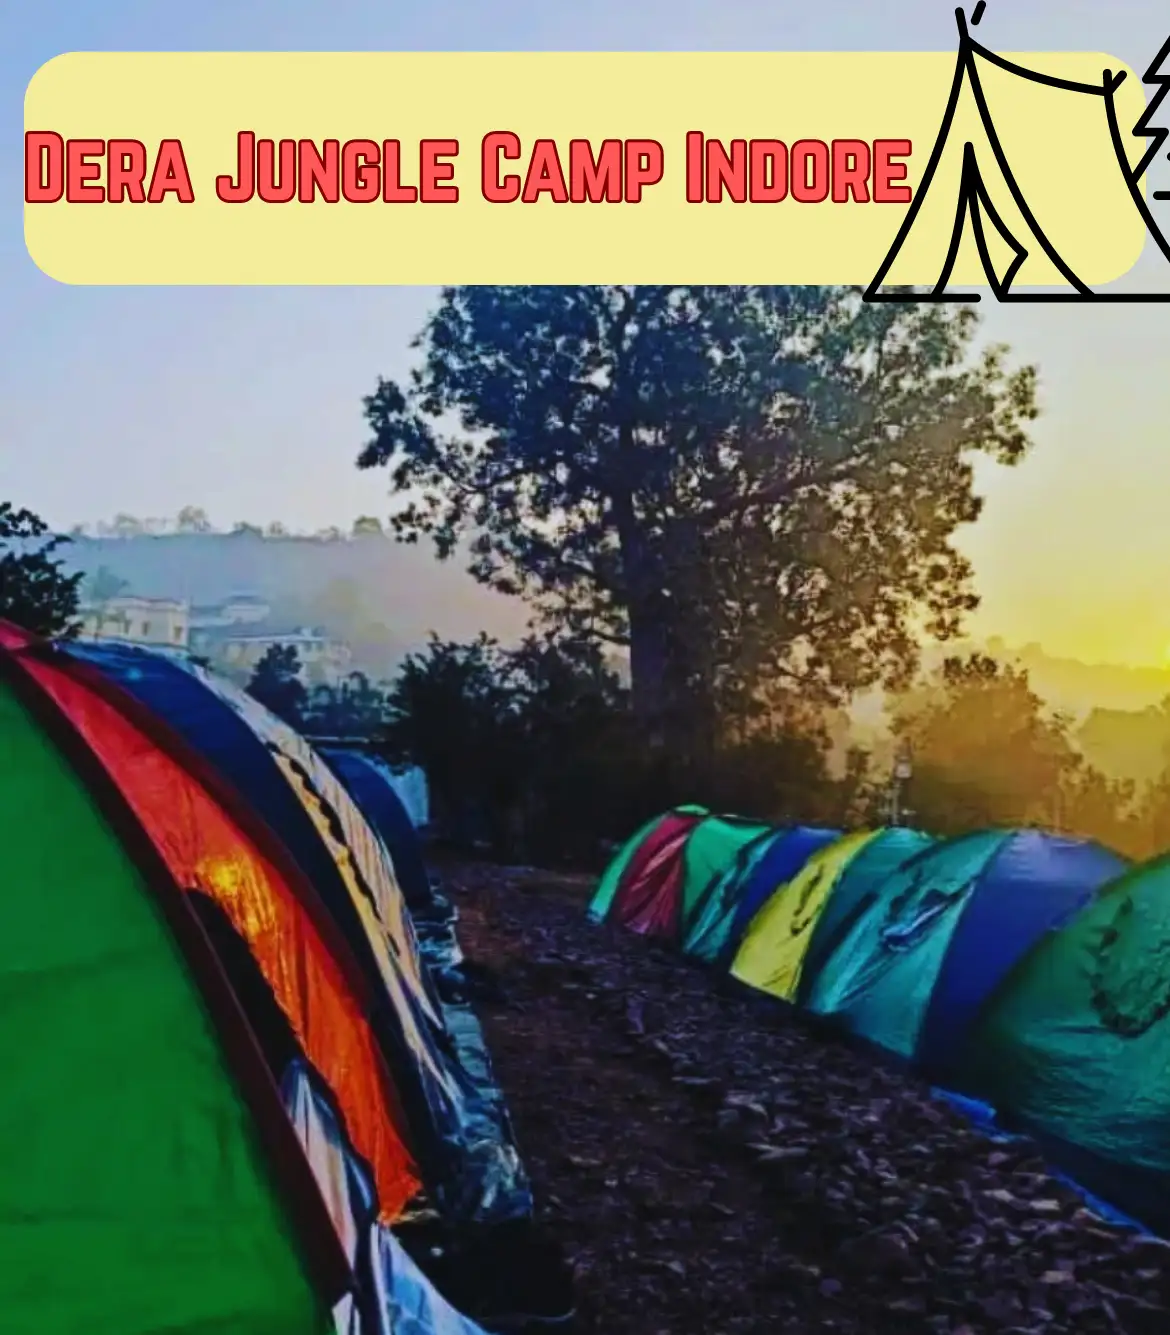 Dera Jungle Camp near Indore